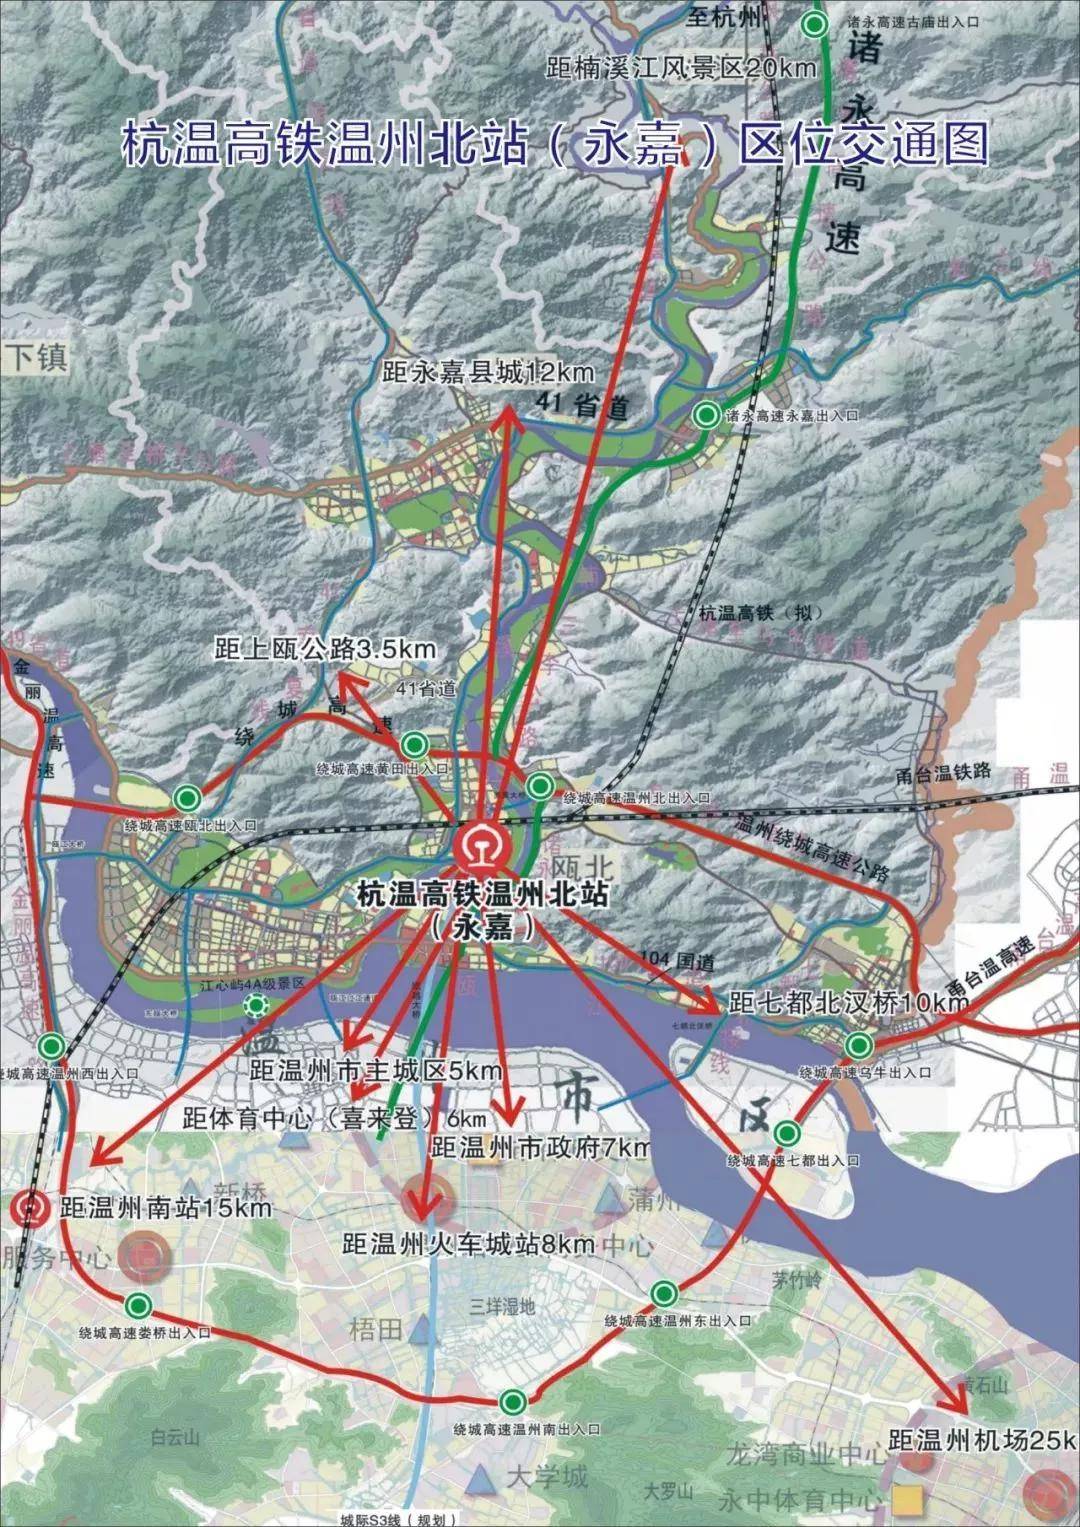 罗浮路隧道,府东路隧道将陆续启动建设,再加上与104国道永嘉三江至